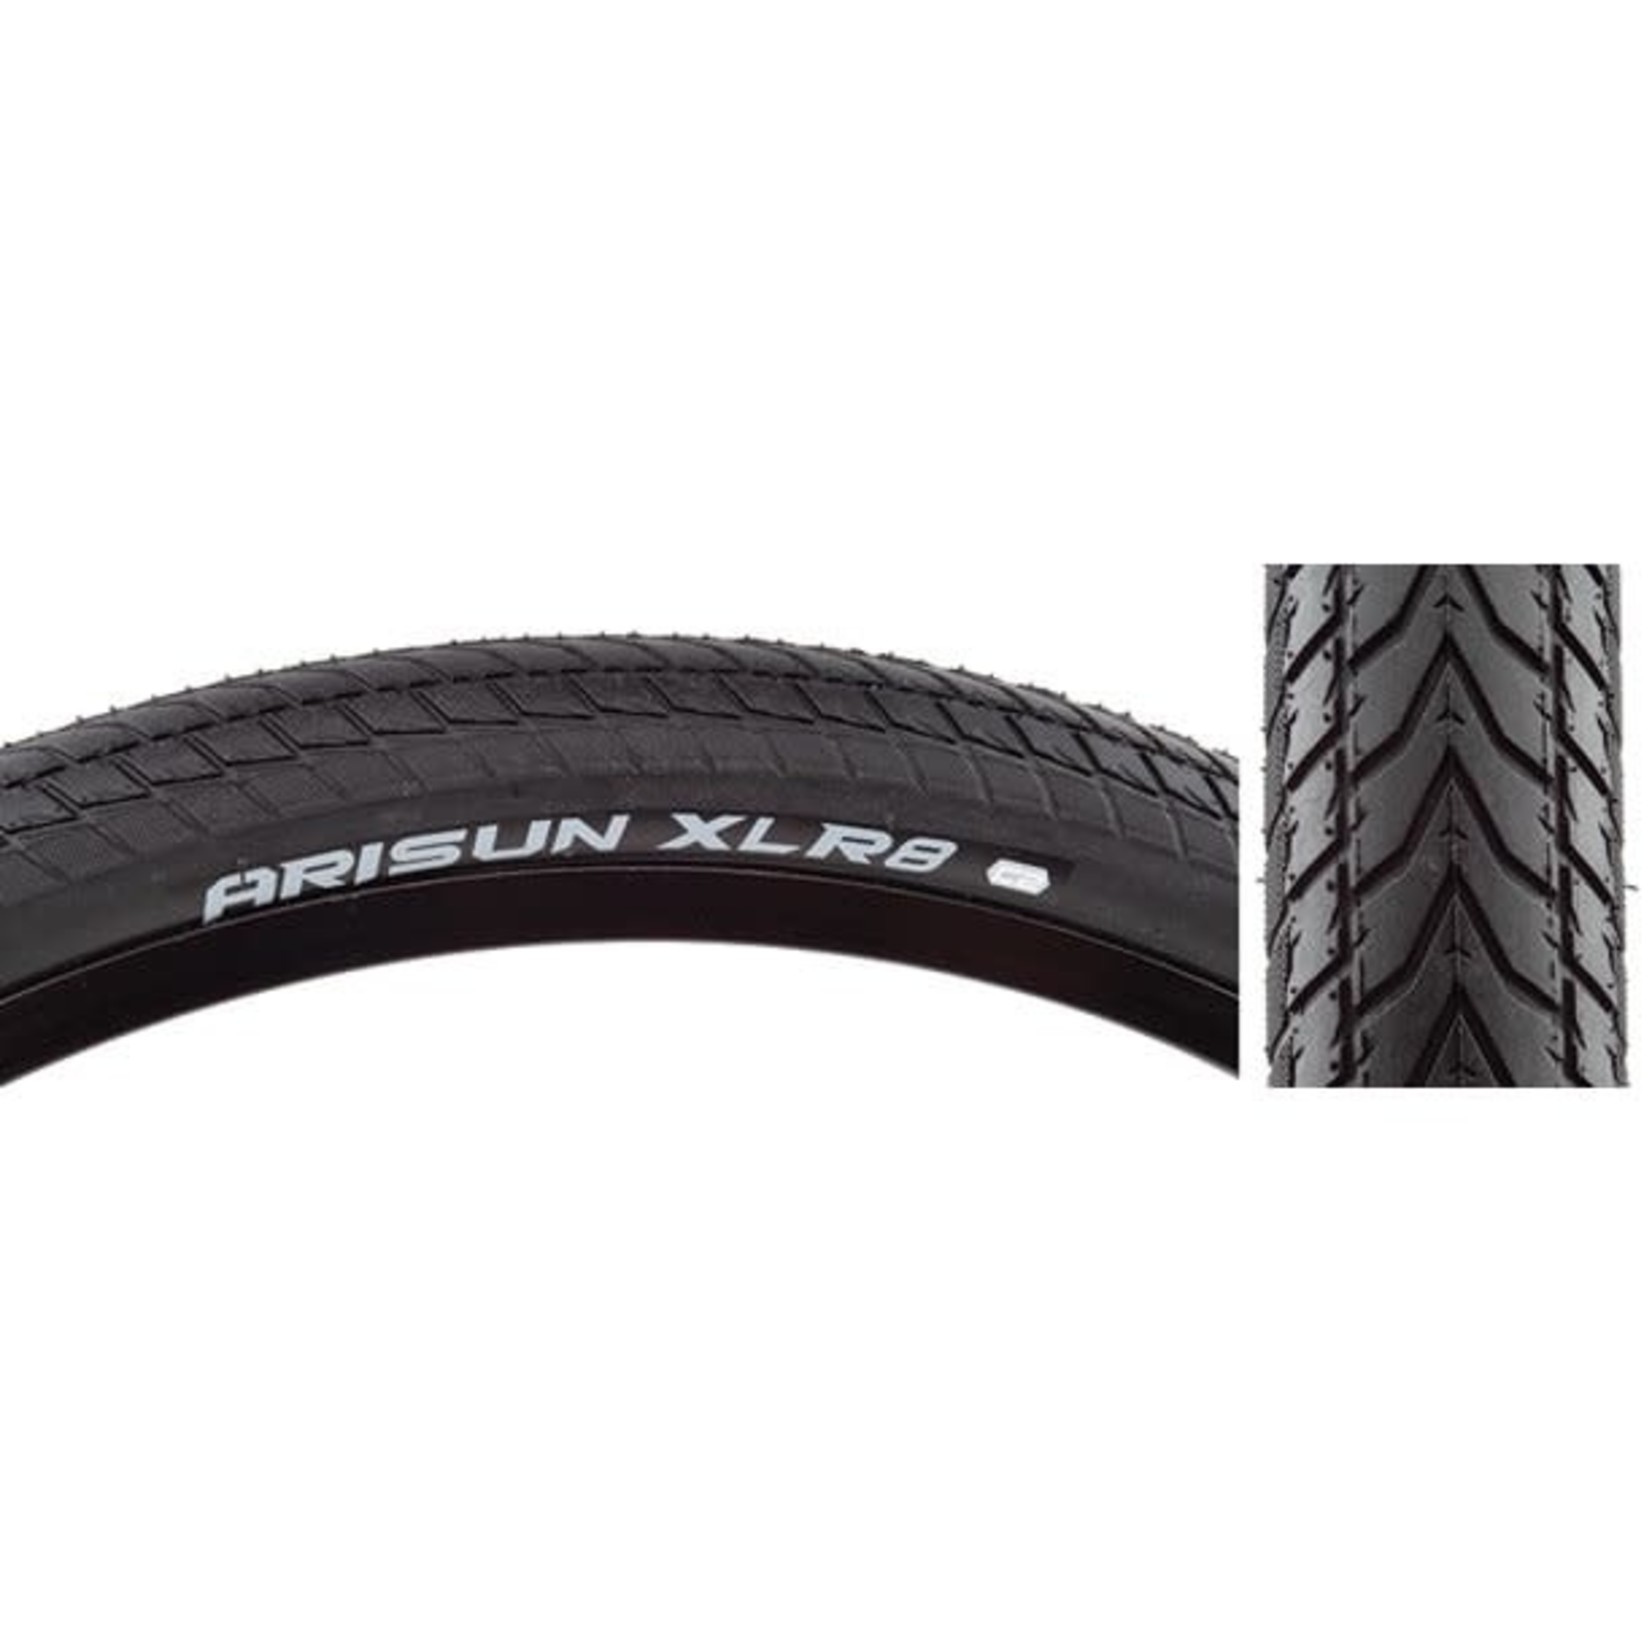 ARISUN Airsun XLR8 Tire, 20x1.5 Bk Wire/60